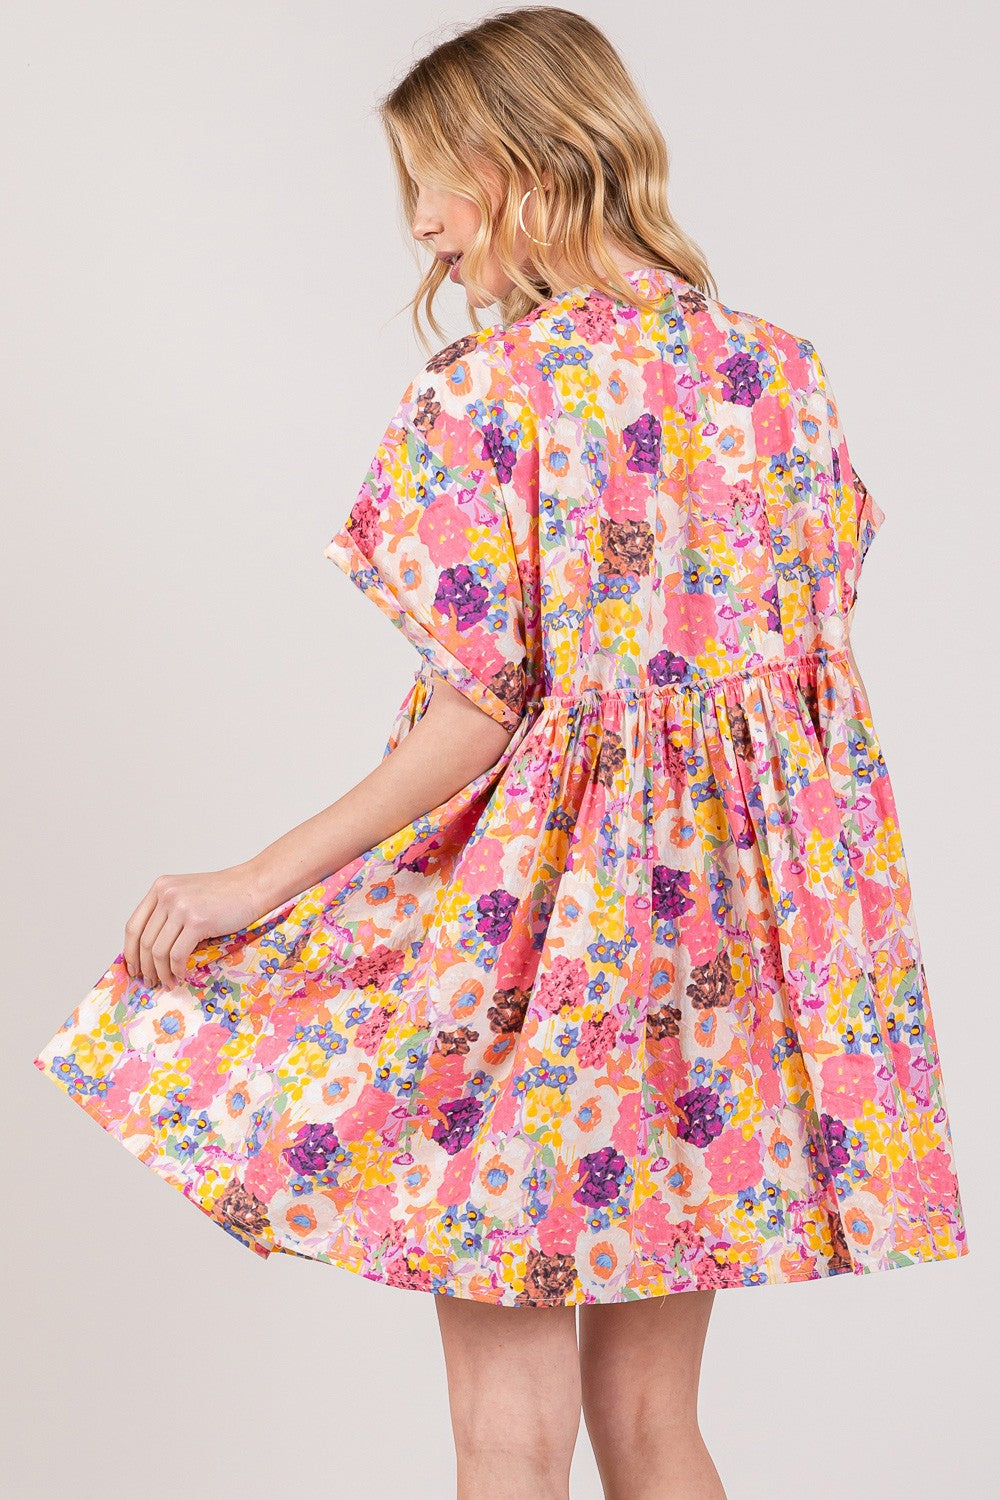 SAGE + FIG Floral Short Sleeve Babydoll Dress with Pockets   